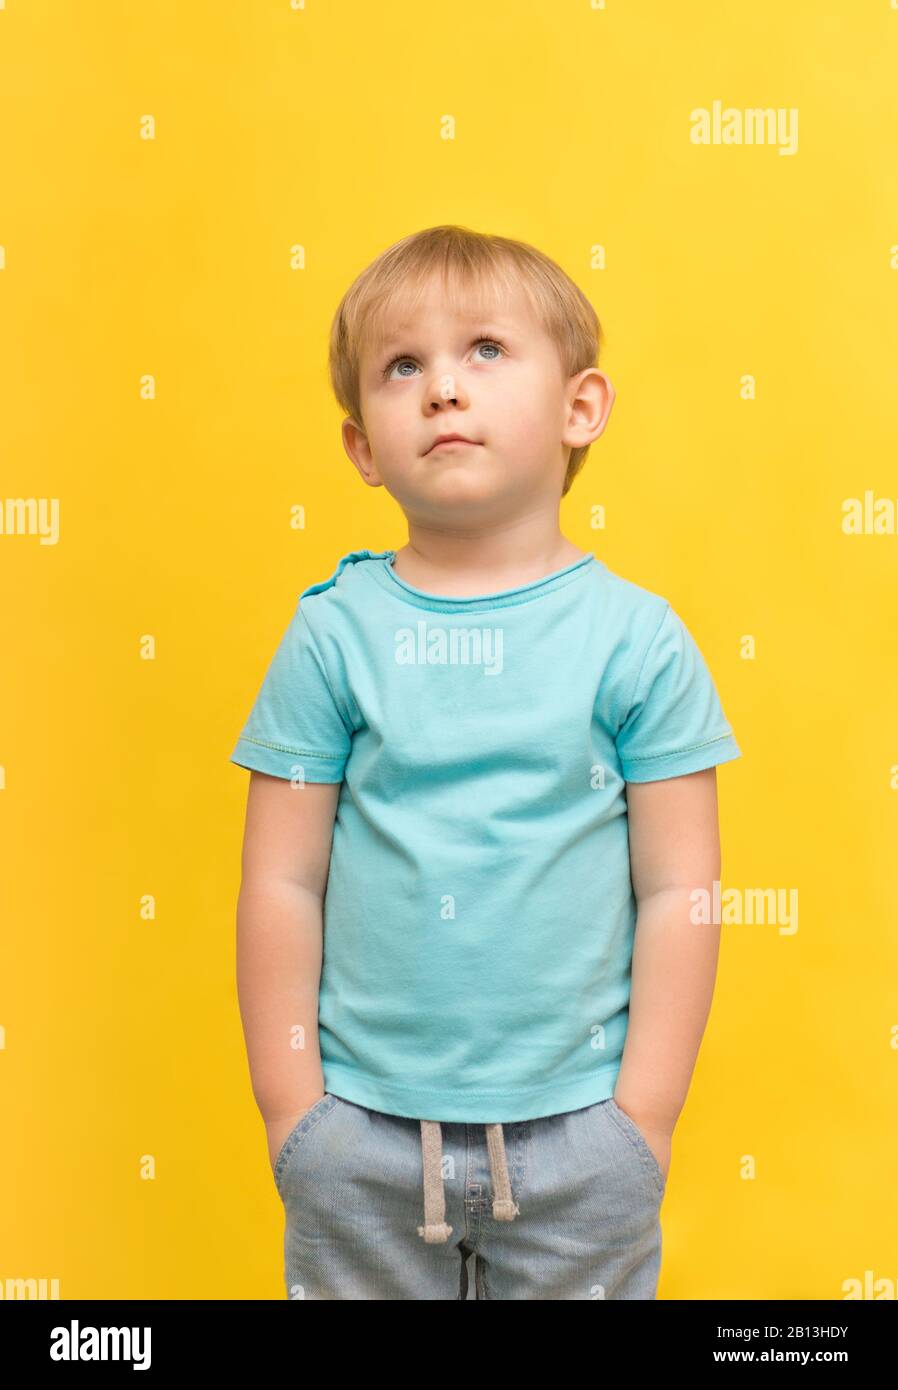 Ein charismatischer, gutaussehender blonder Junge steht und blickt oben auf einen gelben Frühling mit hellem Hintergrund und Platz für Text. Konzept für Banner, Übergabe der pr Stockfoto